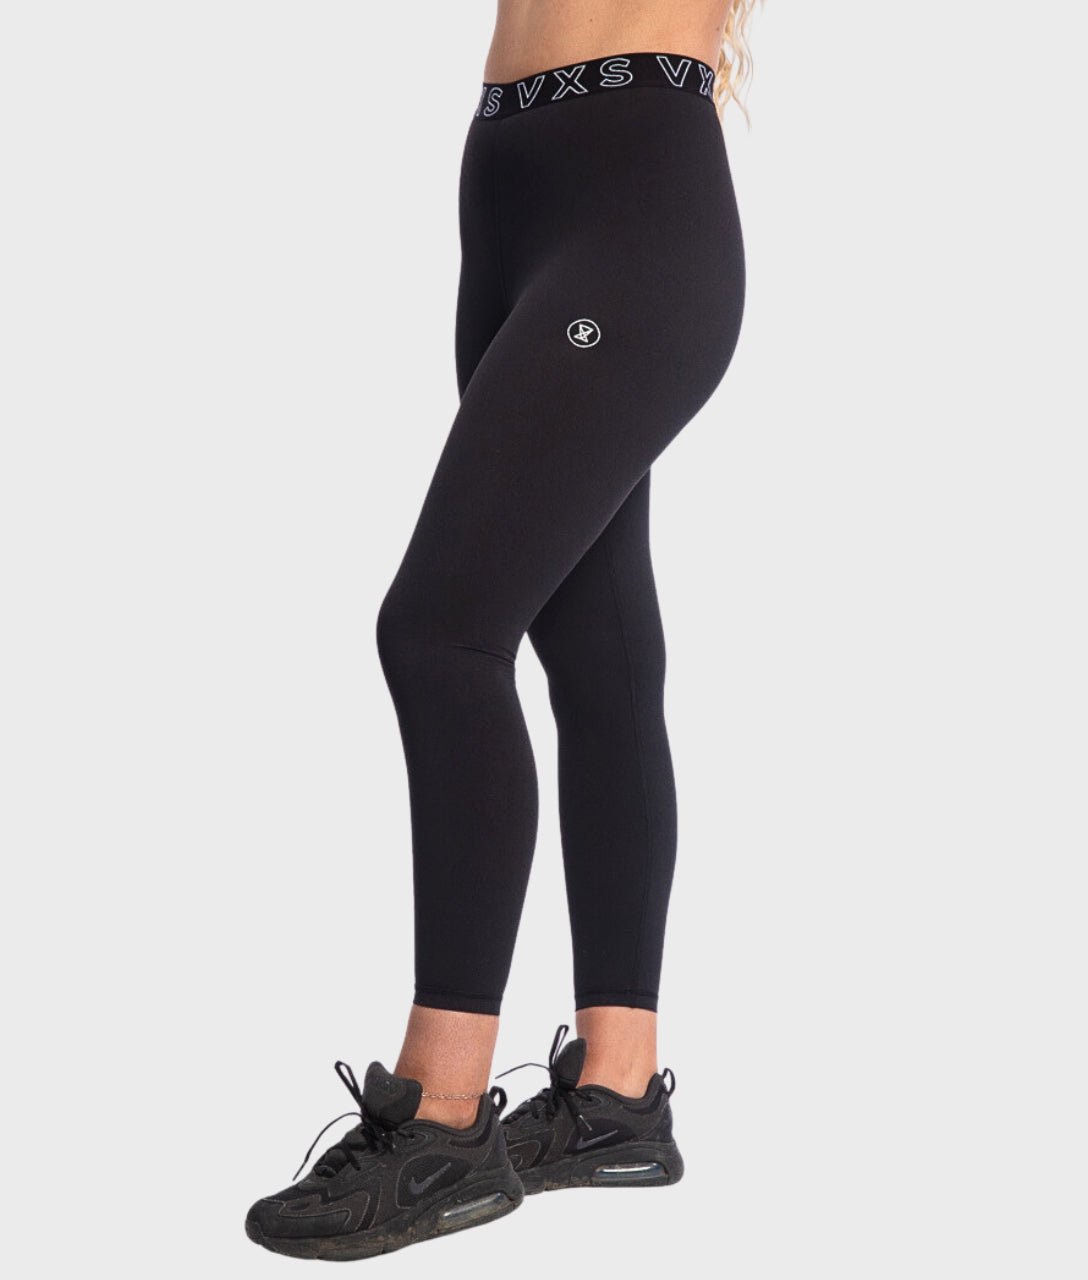 USA Pro Yoga Pant Black, £25.00